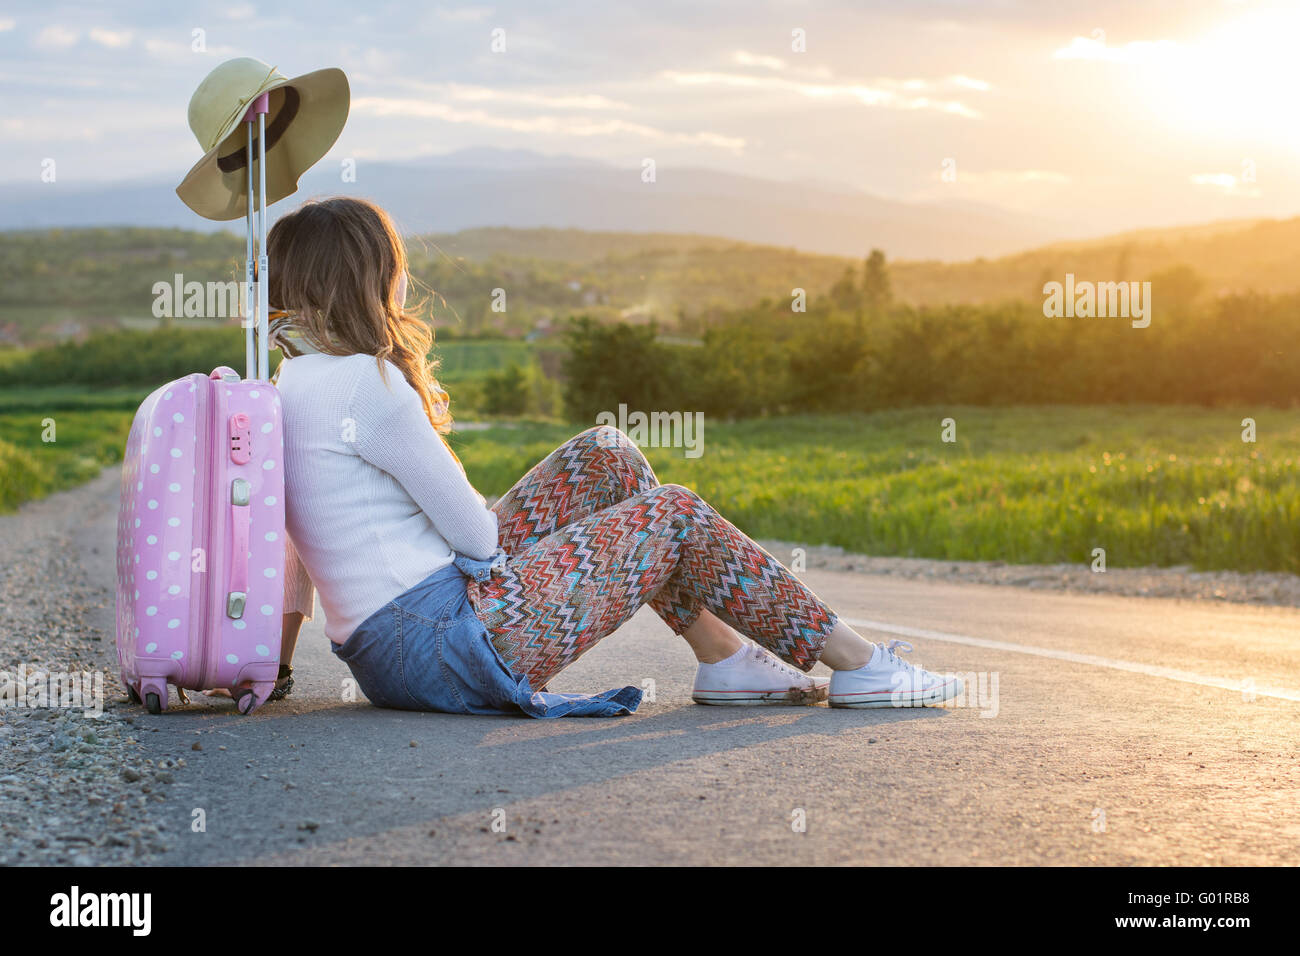 Lonely Girl assis sur la route près de sa valise Banque D'Images